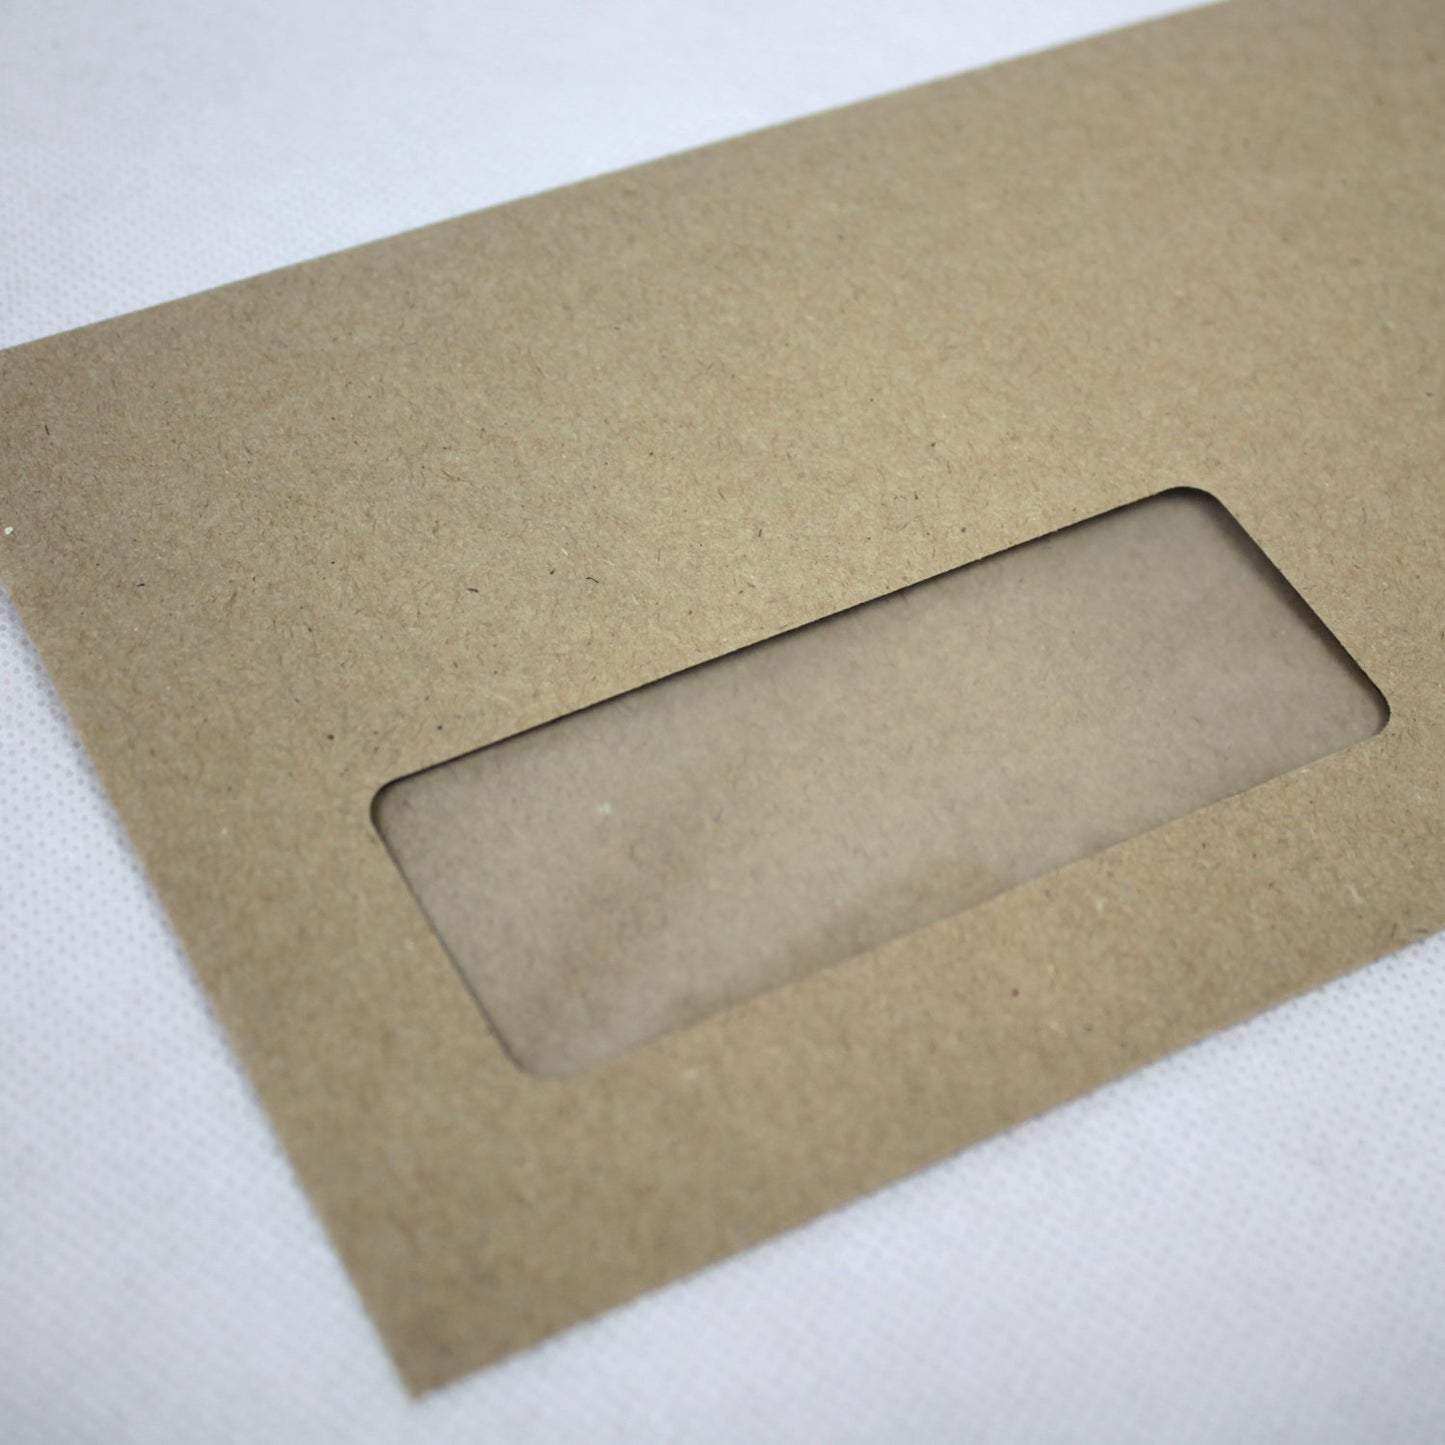 121x235mm DL+ Manilla Gummed Envelopes (Window 35x90mm)